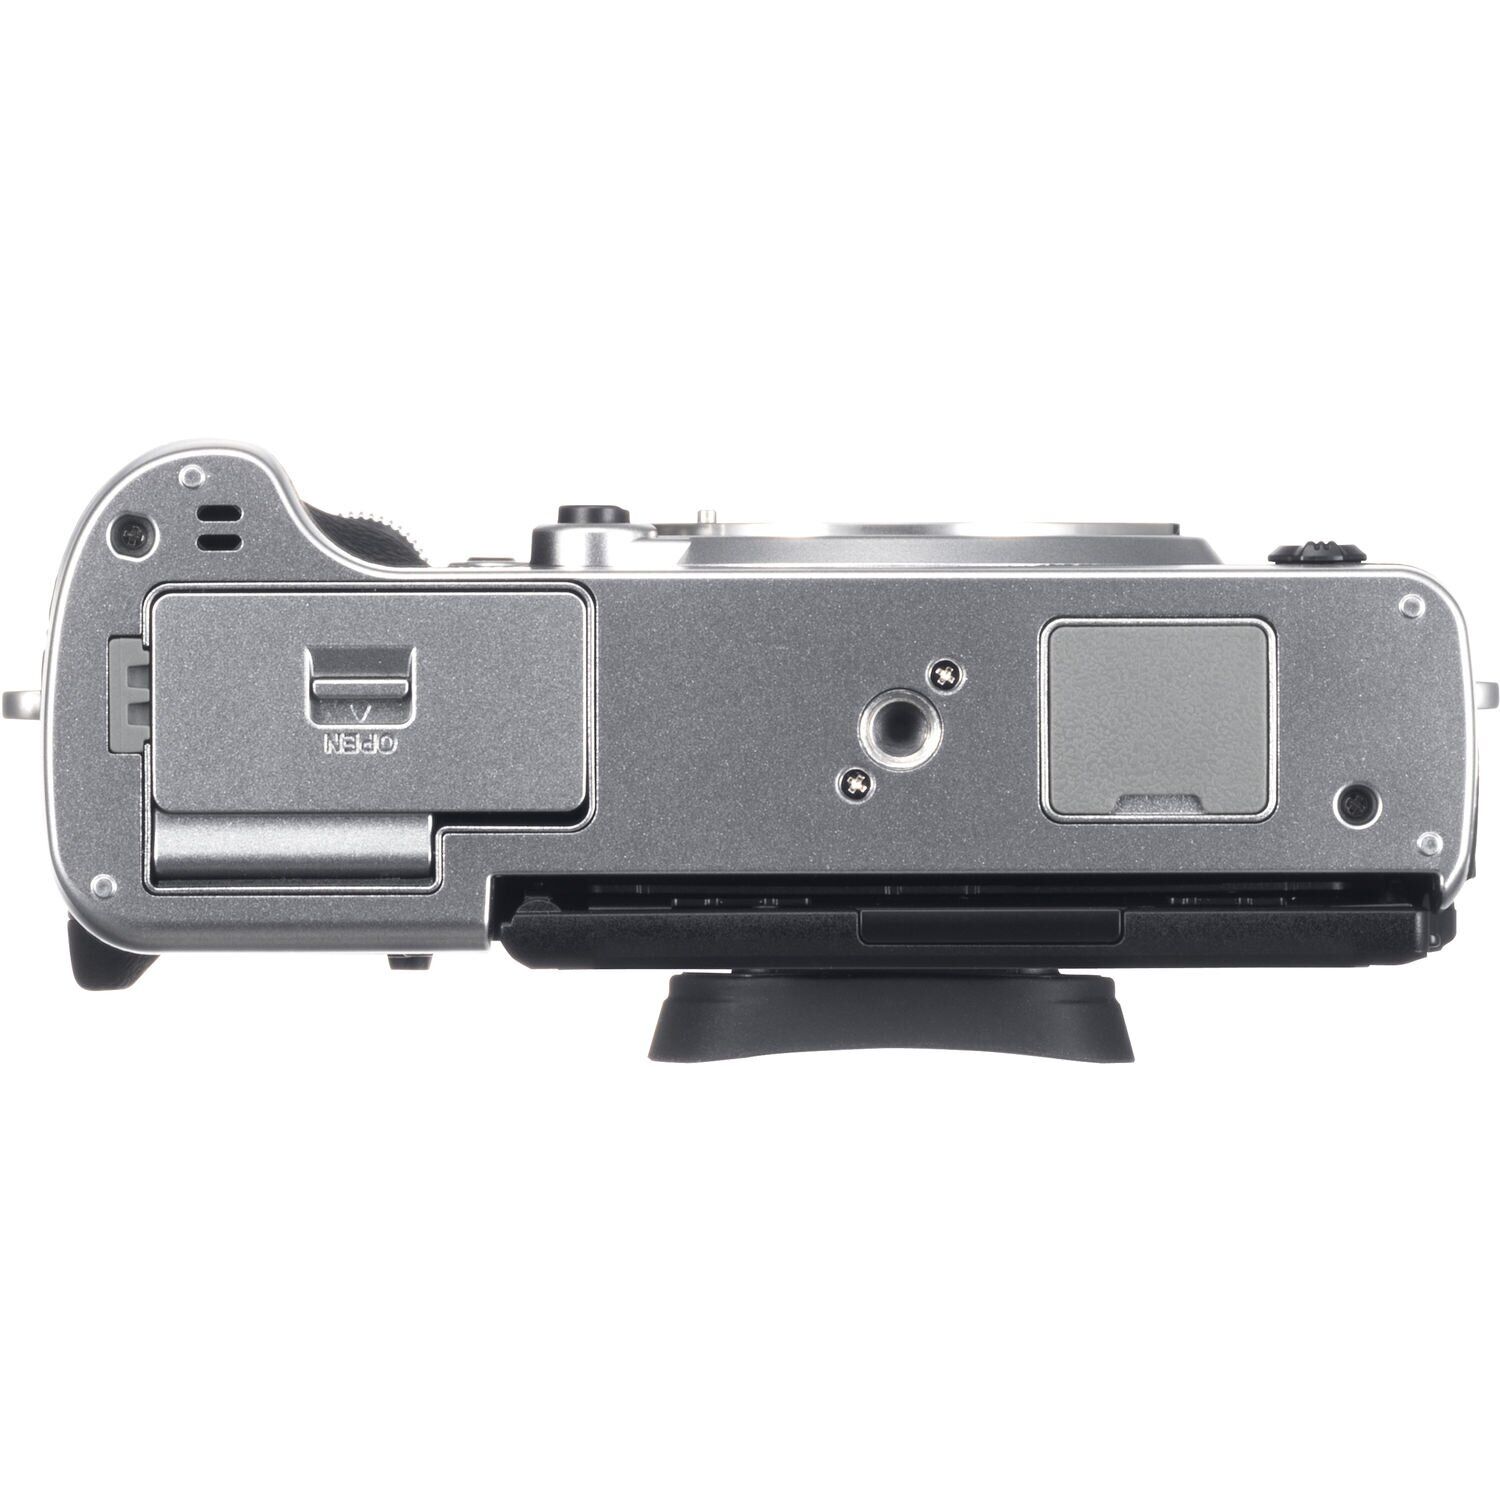 Fujifilm X-T3 Kit 16-80mm Silver